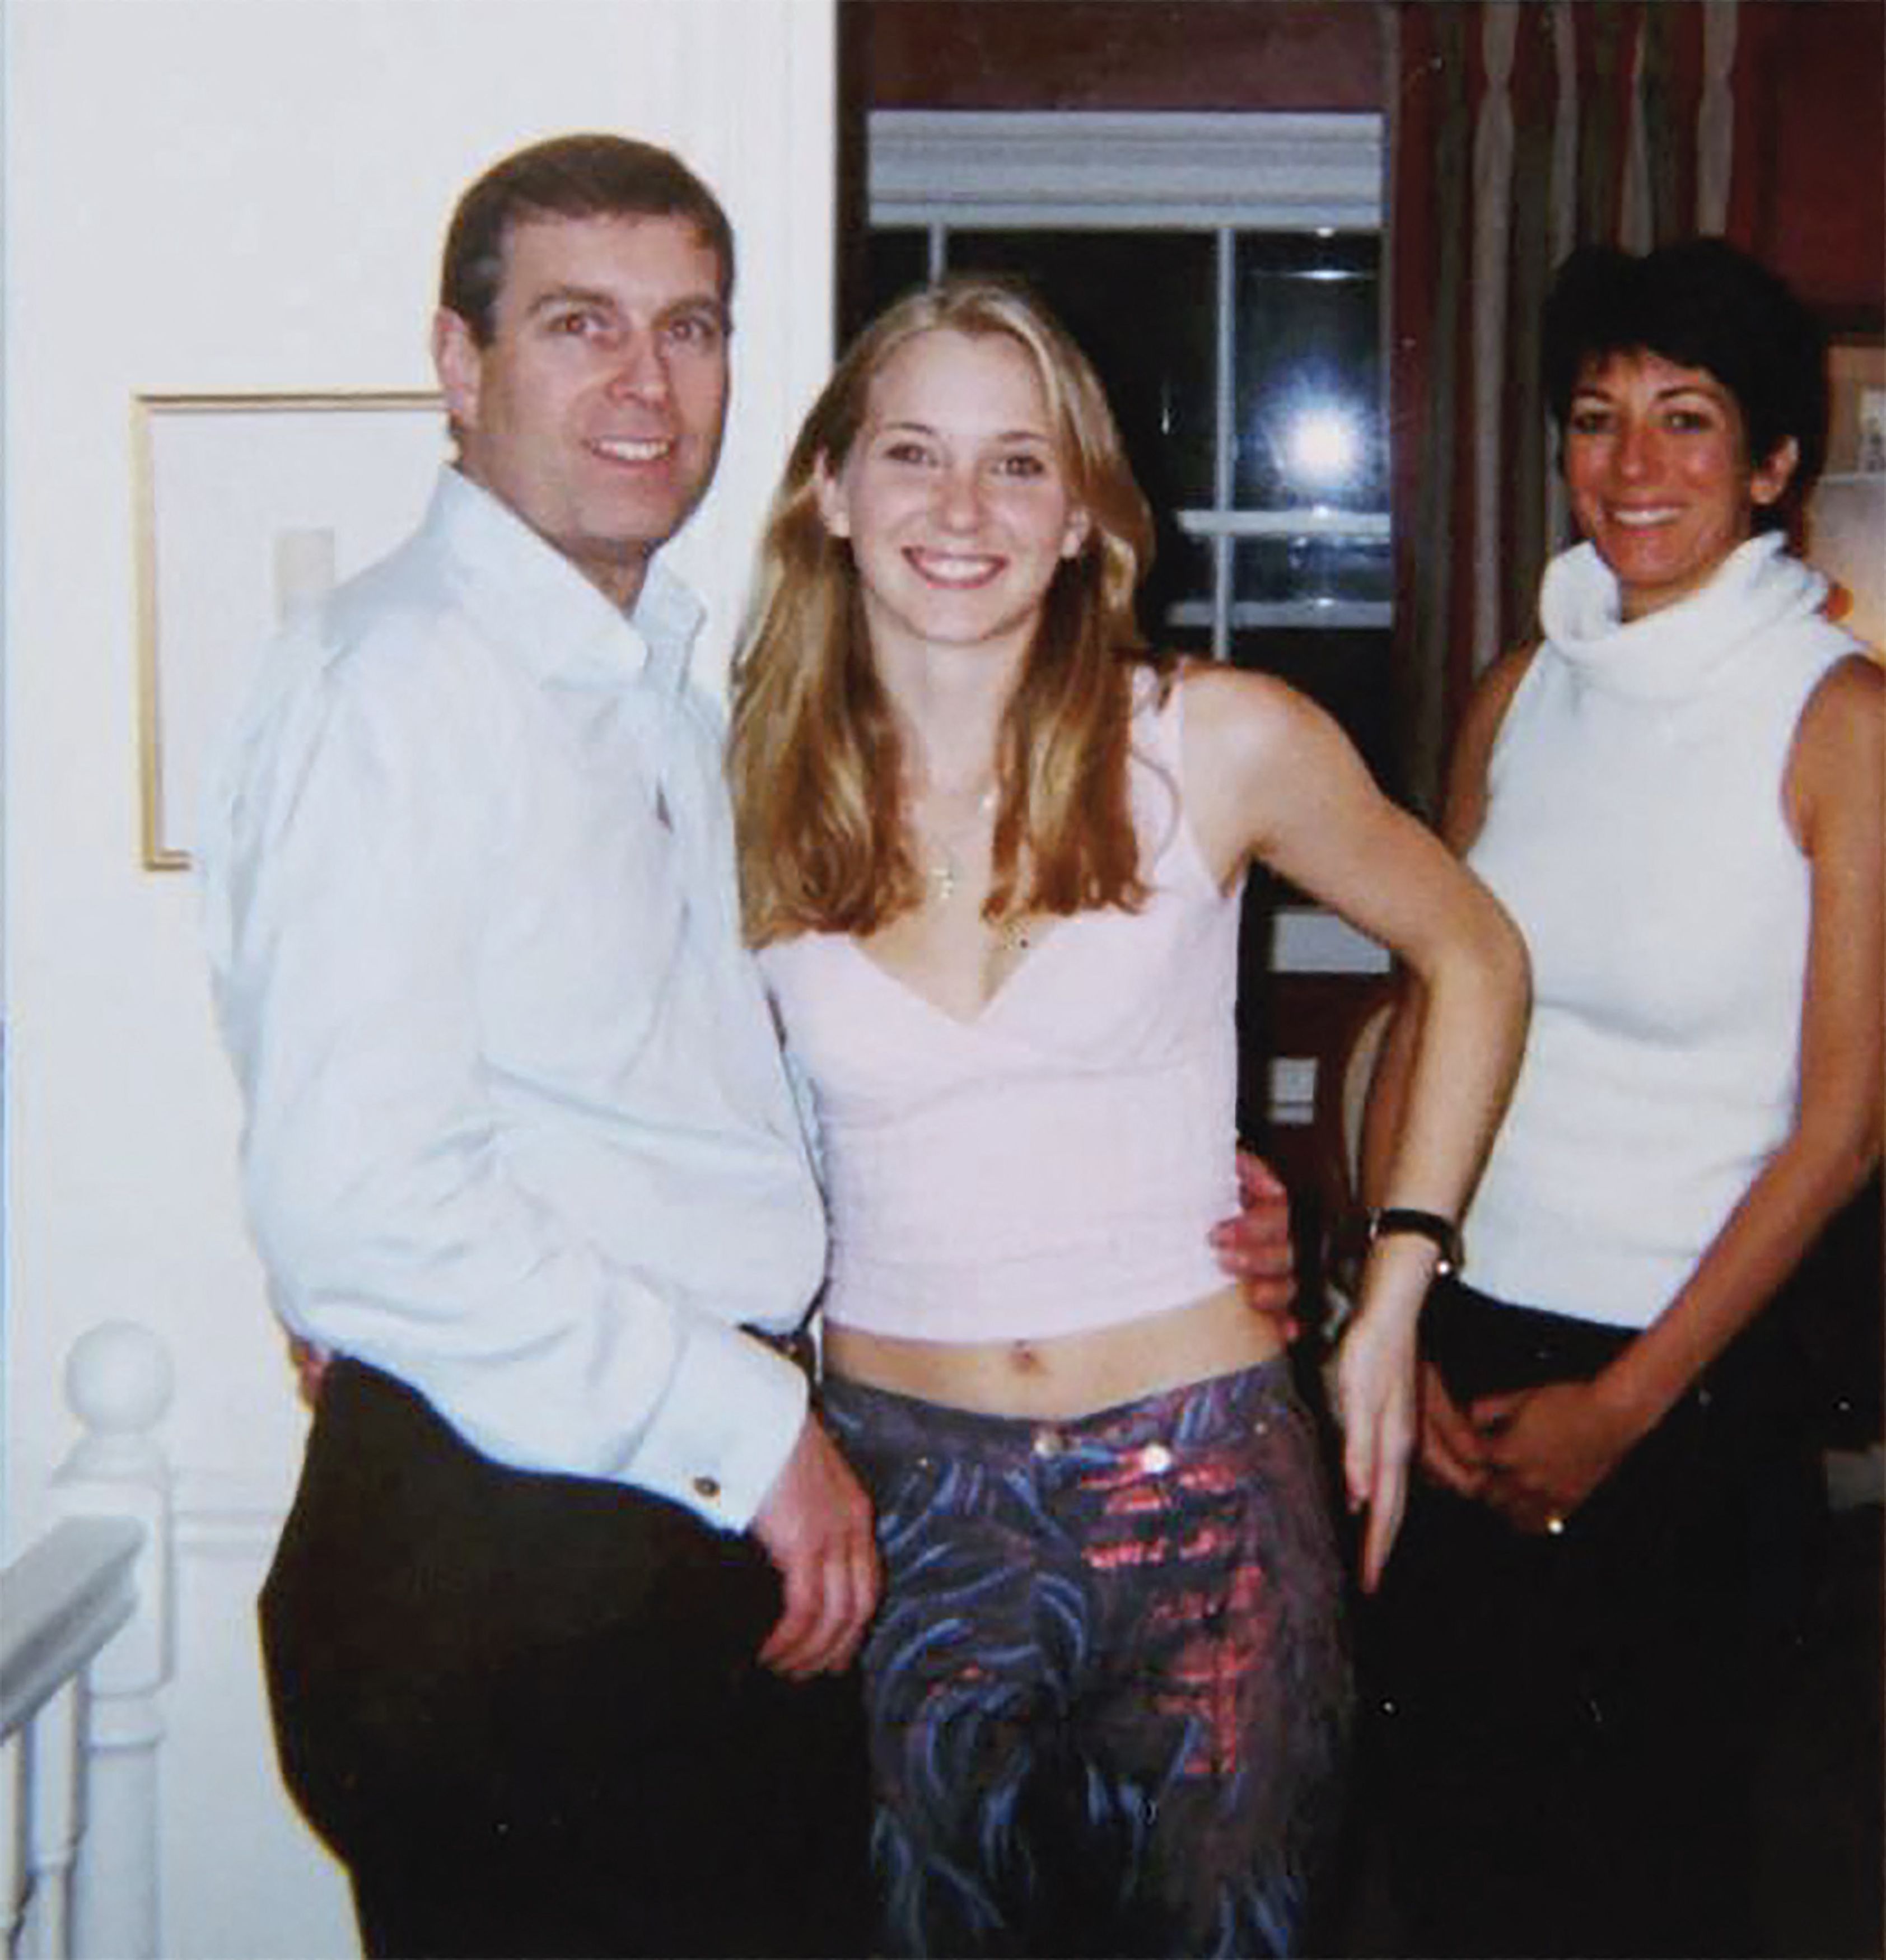 Andrew avec Virginia Roberts, maintenant Giuffre, dans la maison de Ghislaine Maxwell à Londres